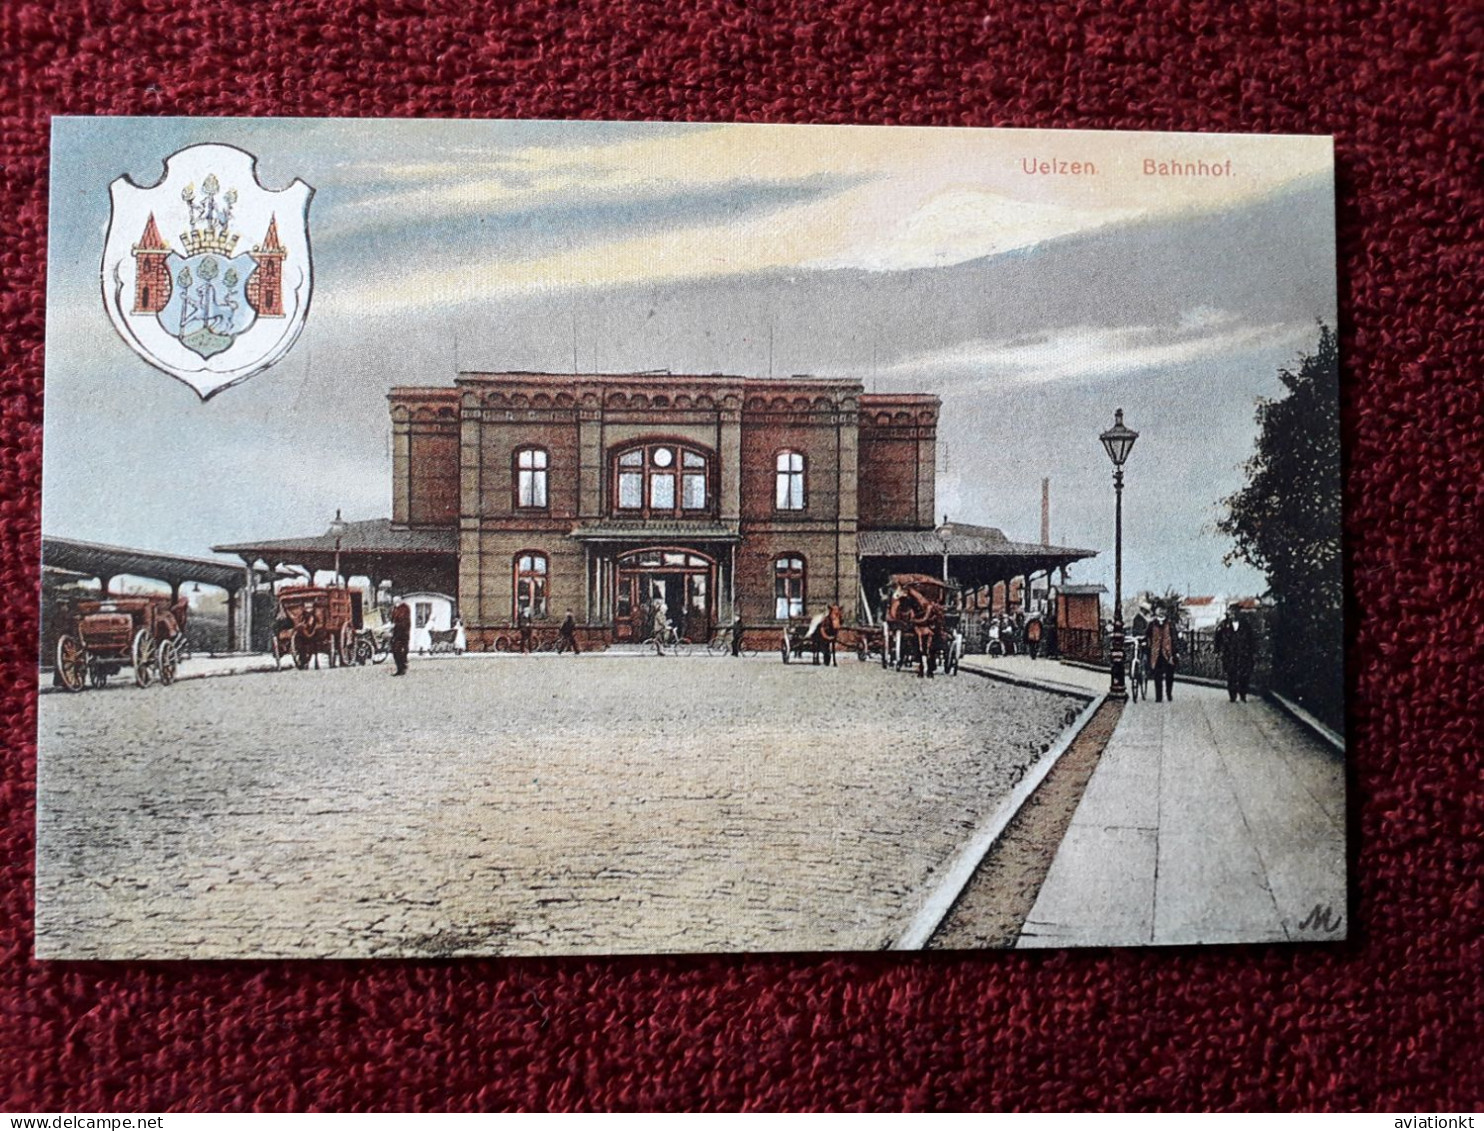 Uelzen Bahnhof , "Repo" Stadtsparkasse Uelzen Gegr. 1839 - Uelzen